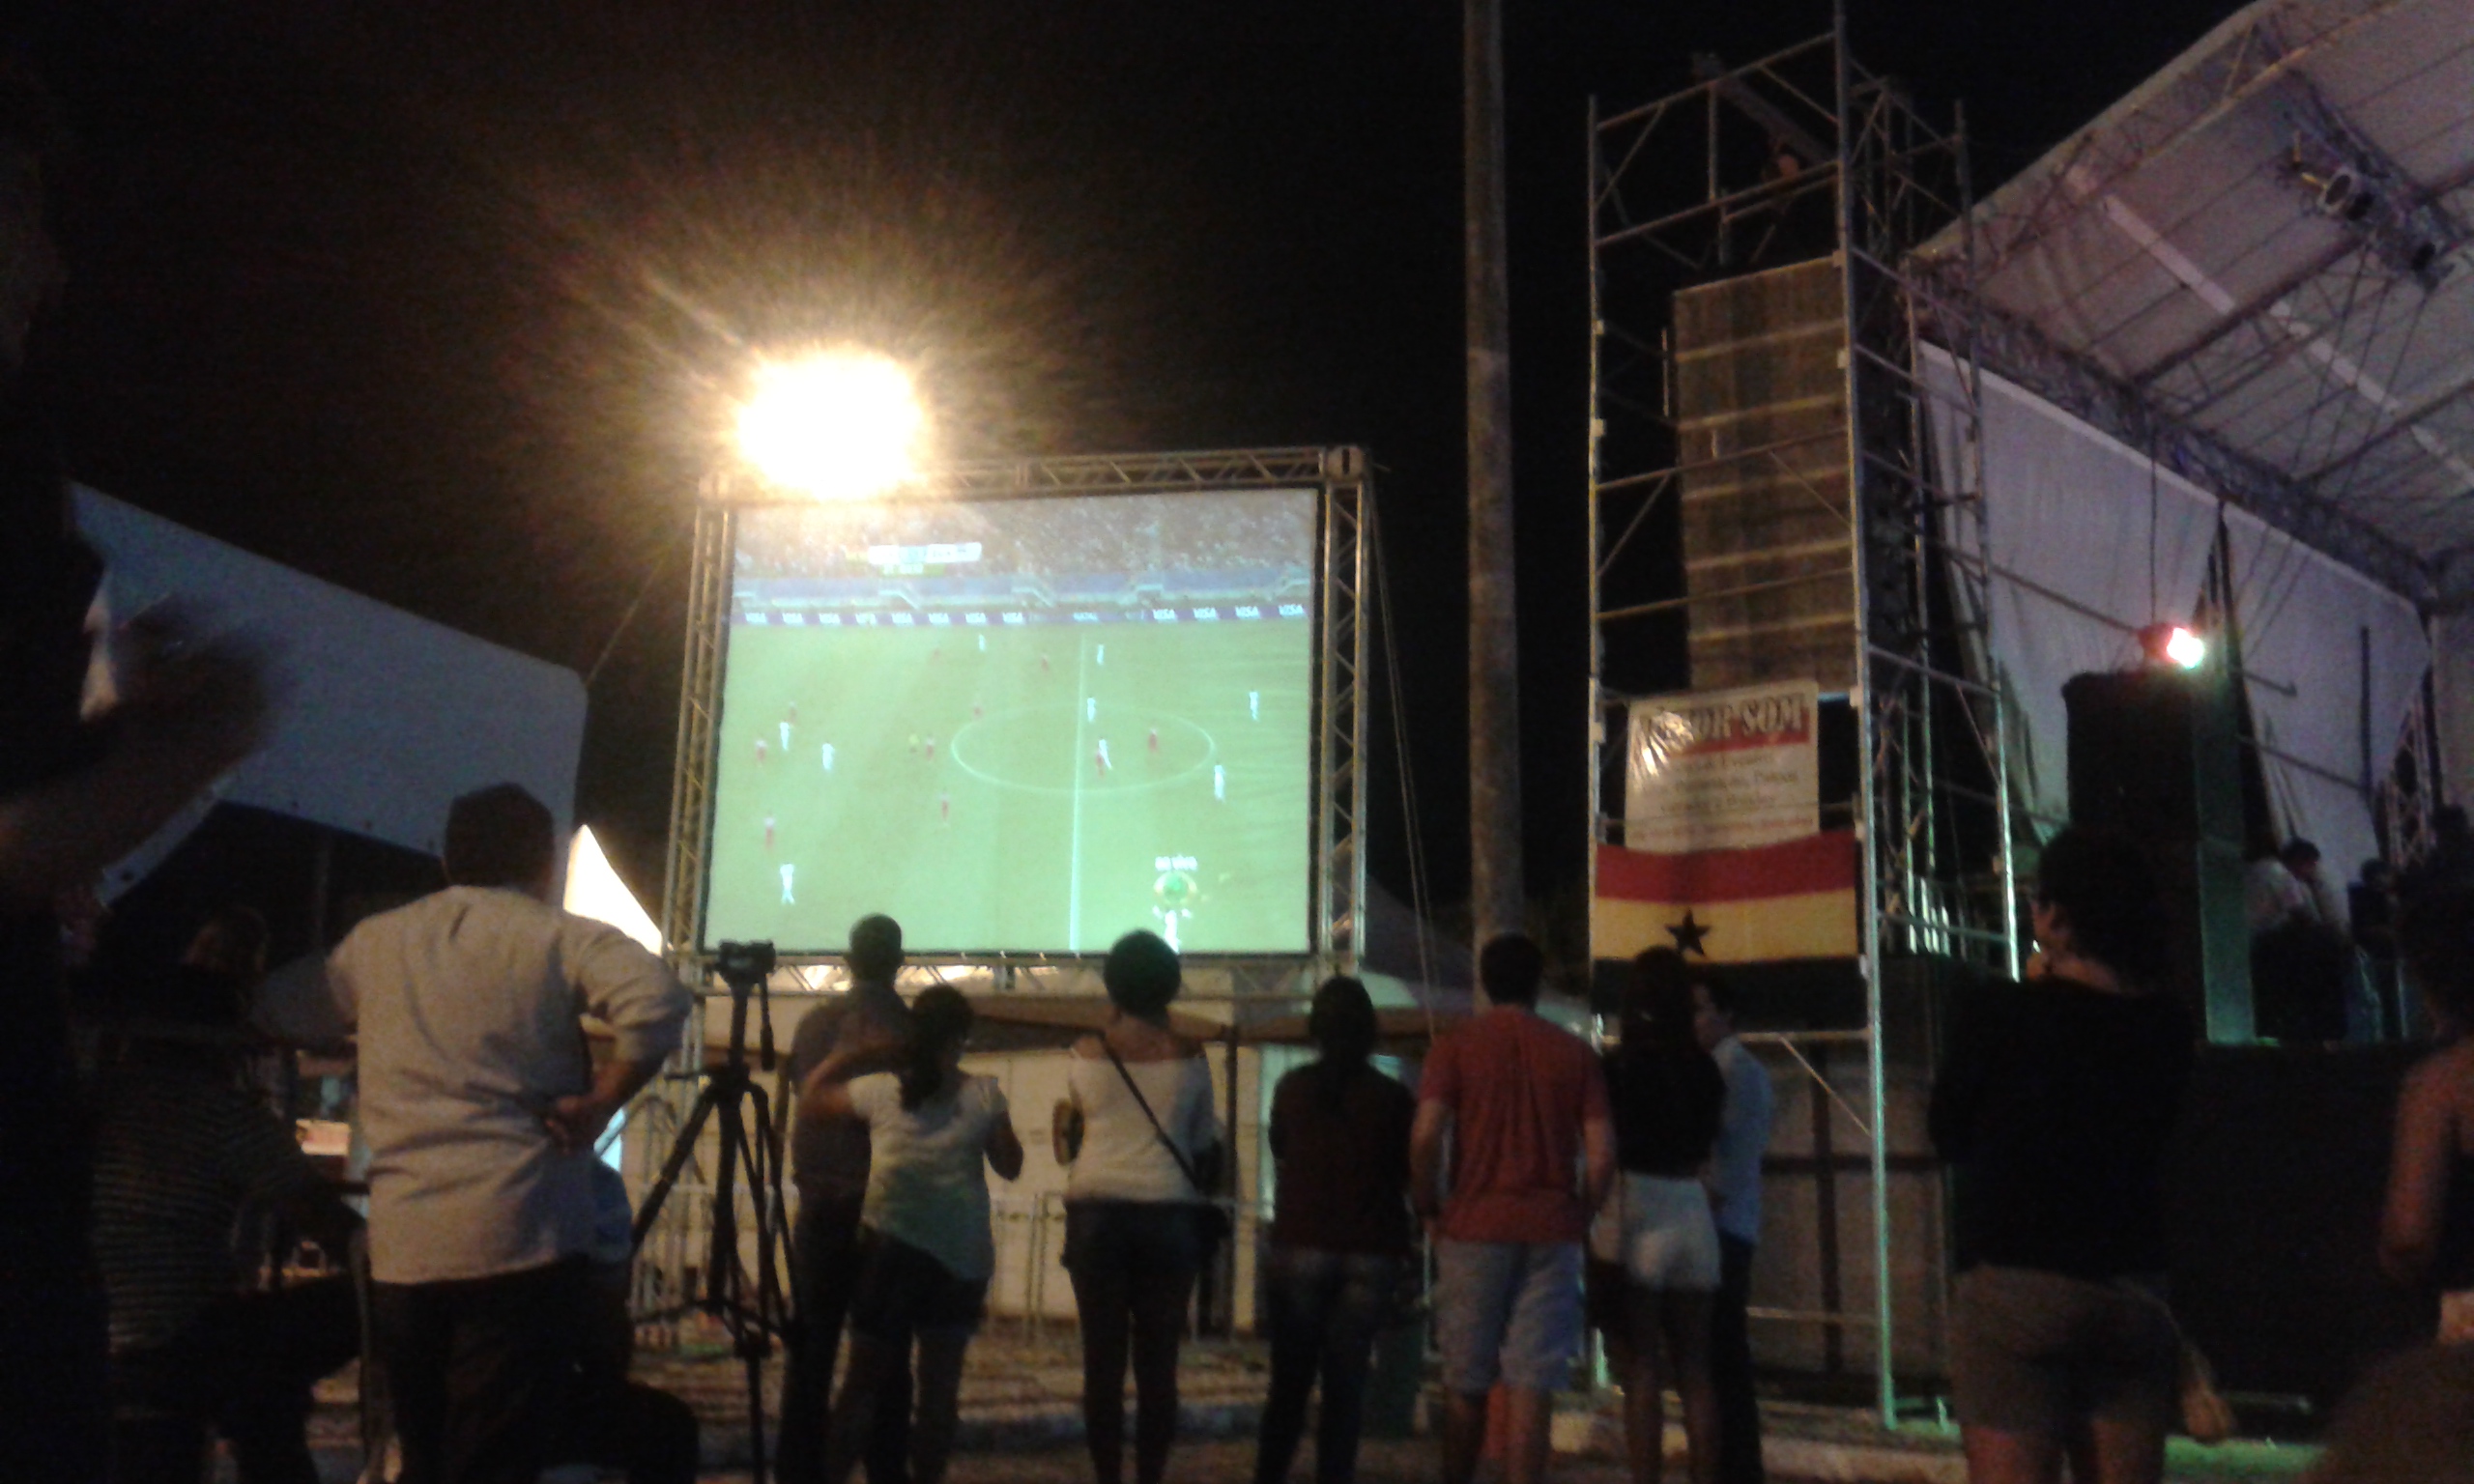 Les supporteurs de Ghana et Brésil regardent le match Ghana - États-Unis au écran géante installé au Festival (Crédite photo: Fabio Santana).